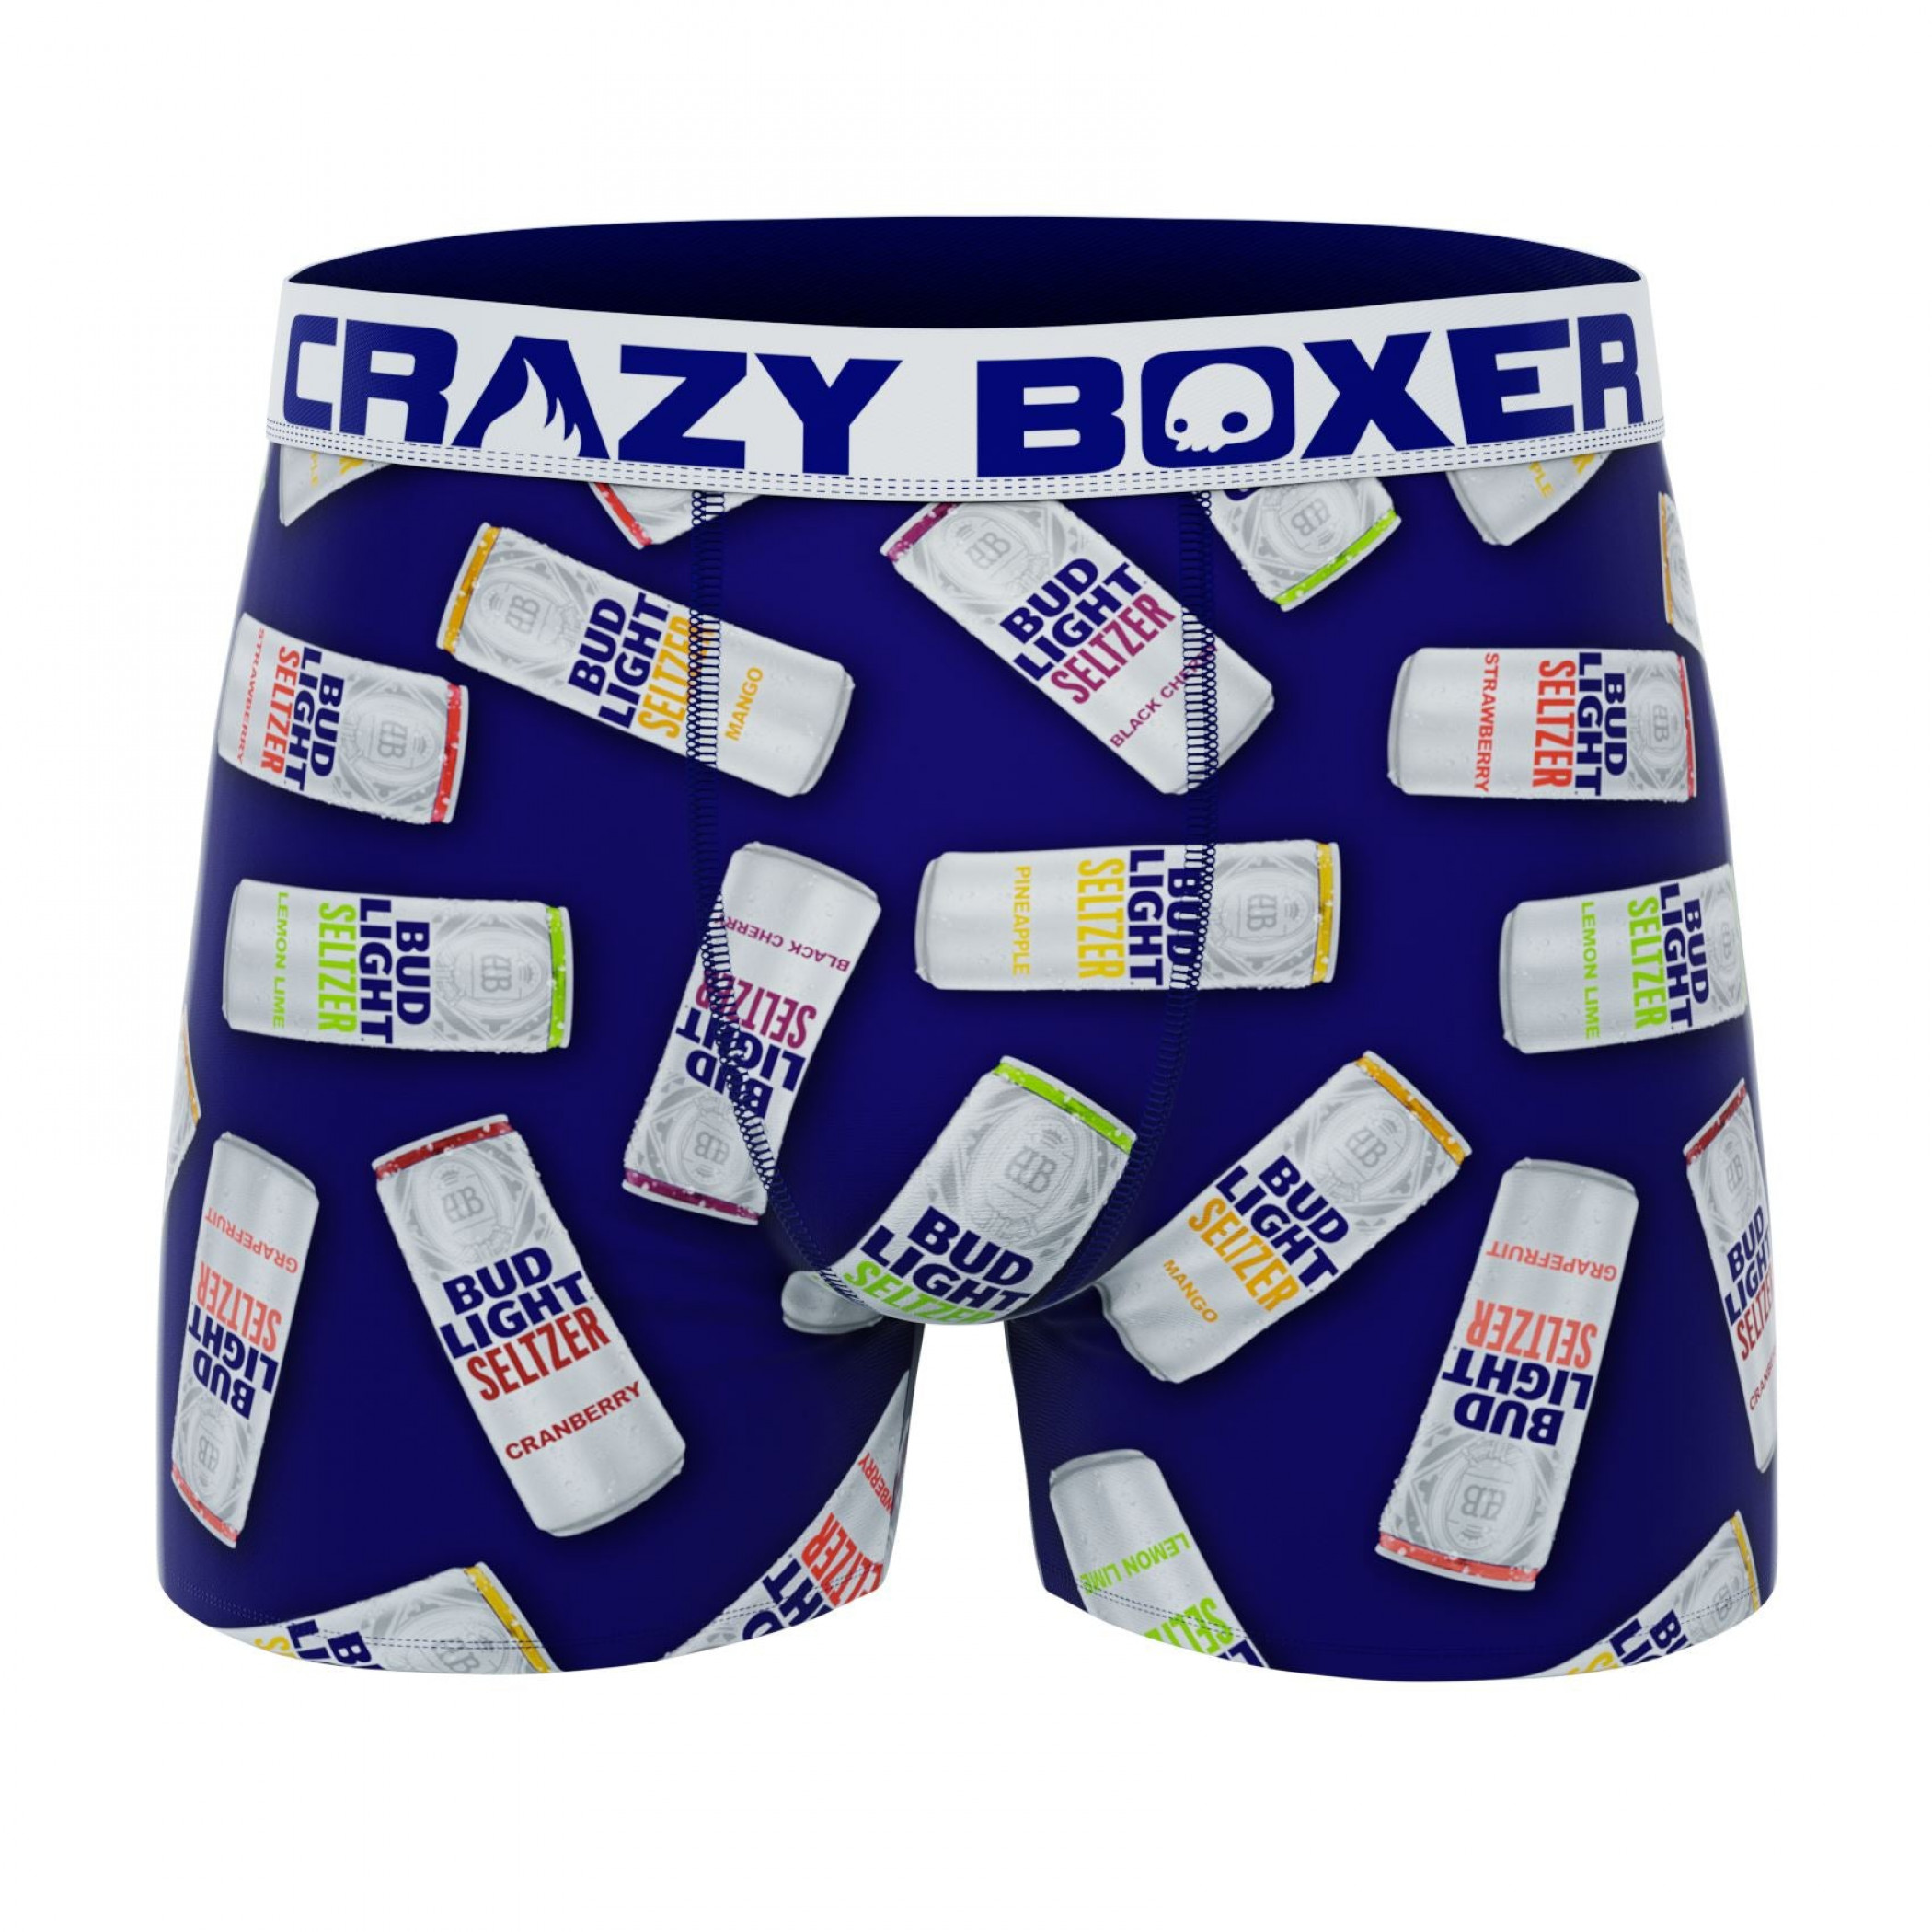 Crazy Boxer Bud Light Seltzer All Cans Print Men's Boxer Briefs